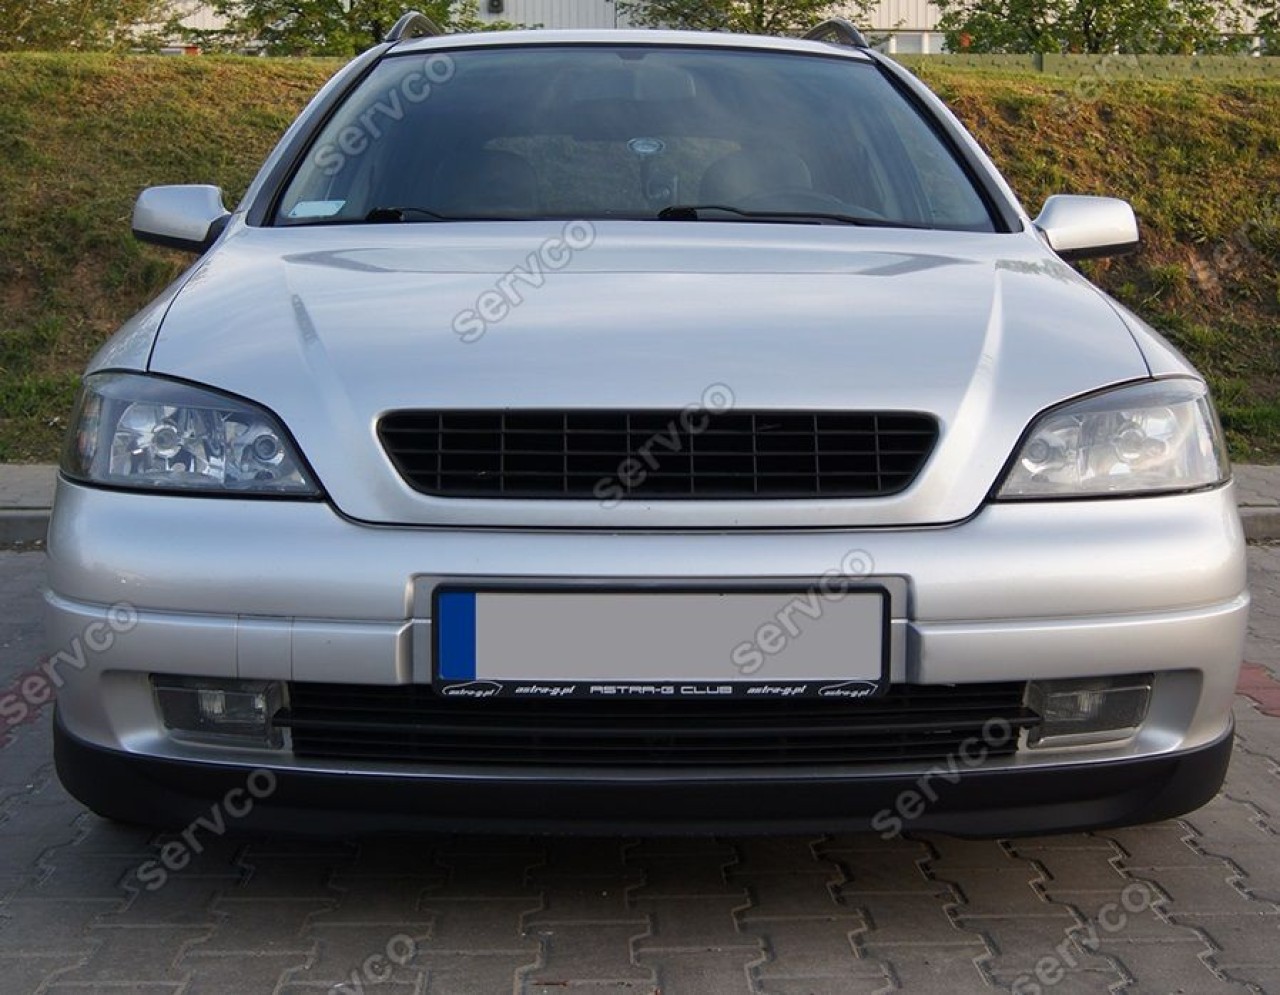 Prelungire adaos buza tuning sport spoiler bara fata Opel Astra G OPC Line  1998-2011 v3 #39314312